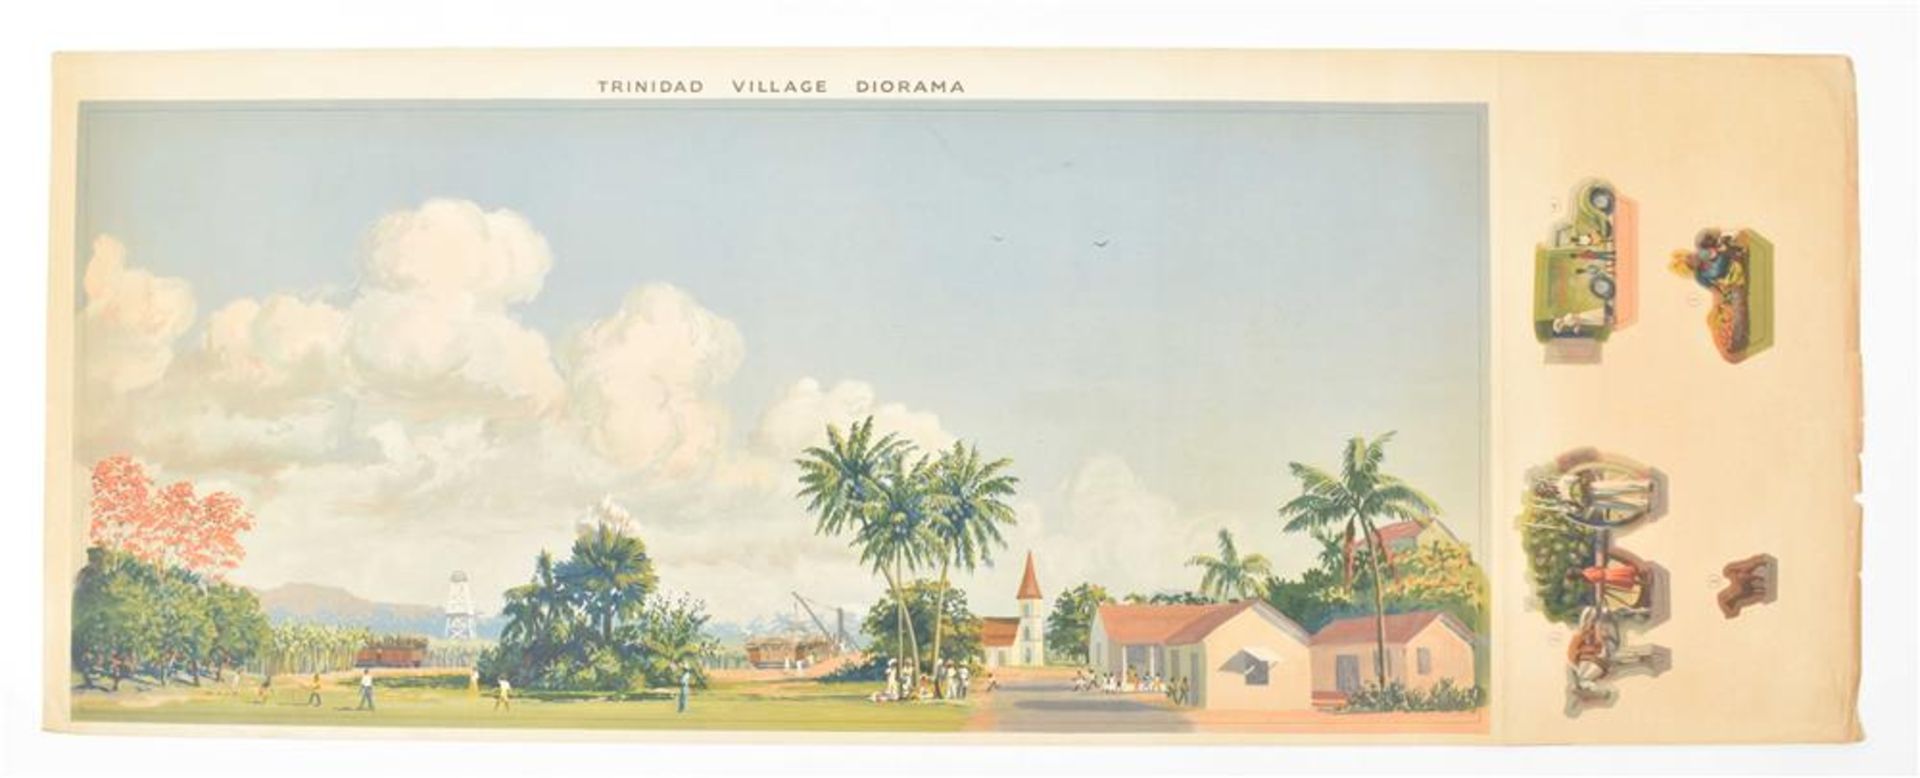 [Diorama/Paper theatre] Trinidad village